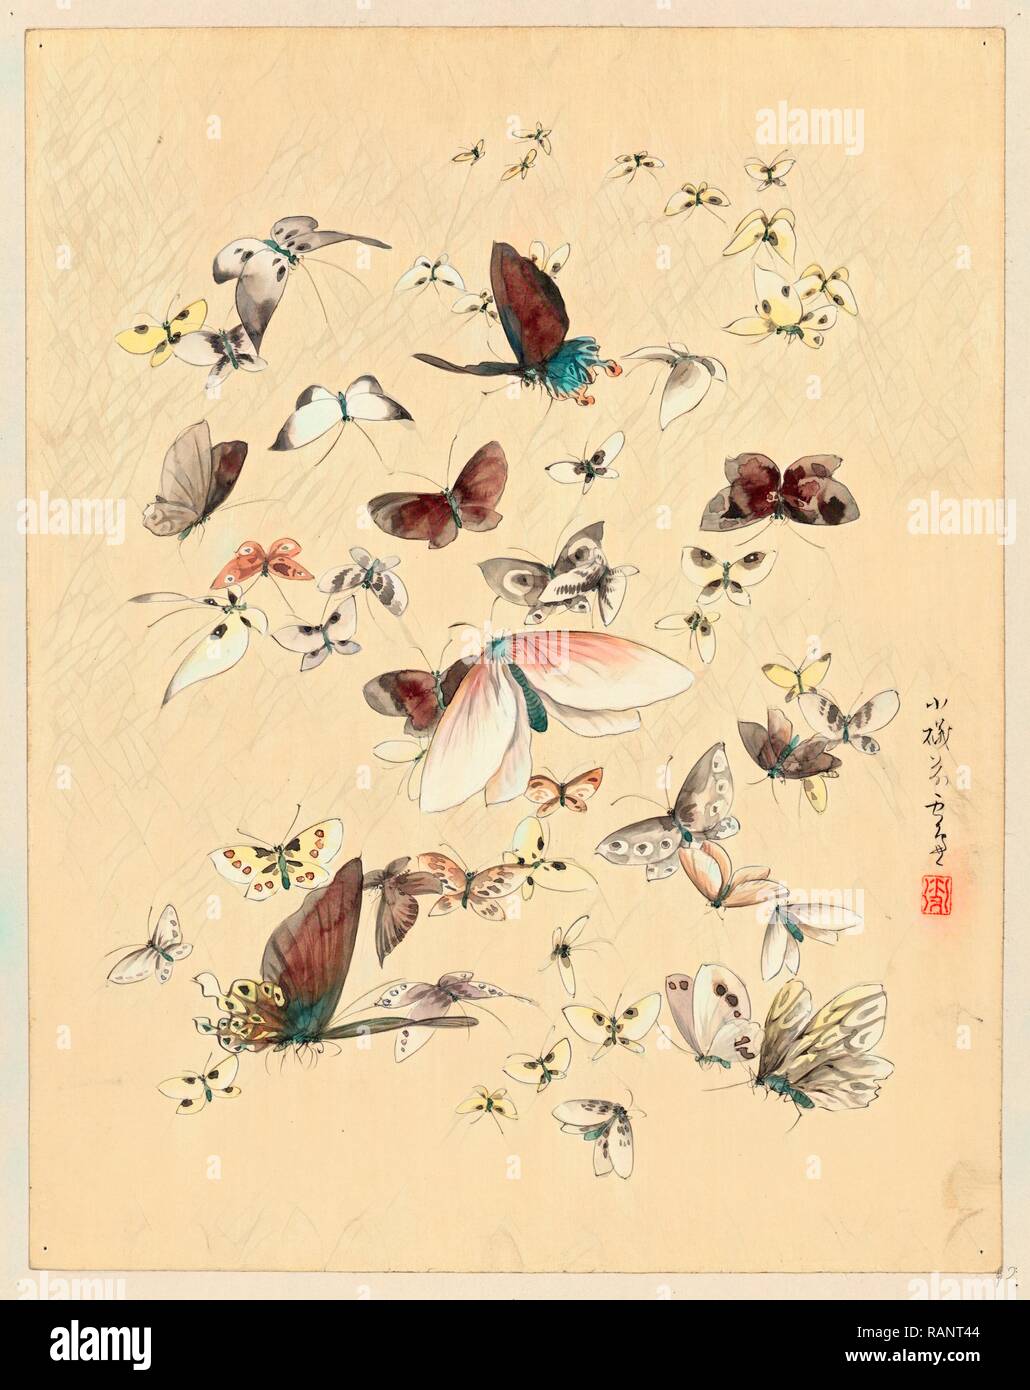 [Mariposas y polillas], [entre 1800 y 1850] 1: Color de dibujo. Reimagined by Gibon. Arte clásico con un moderno reinventado Foto de stock